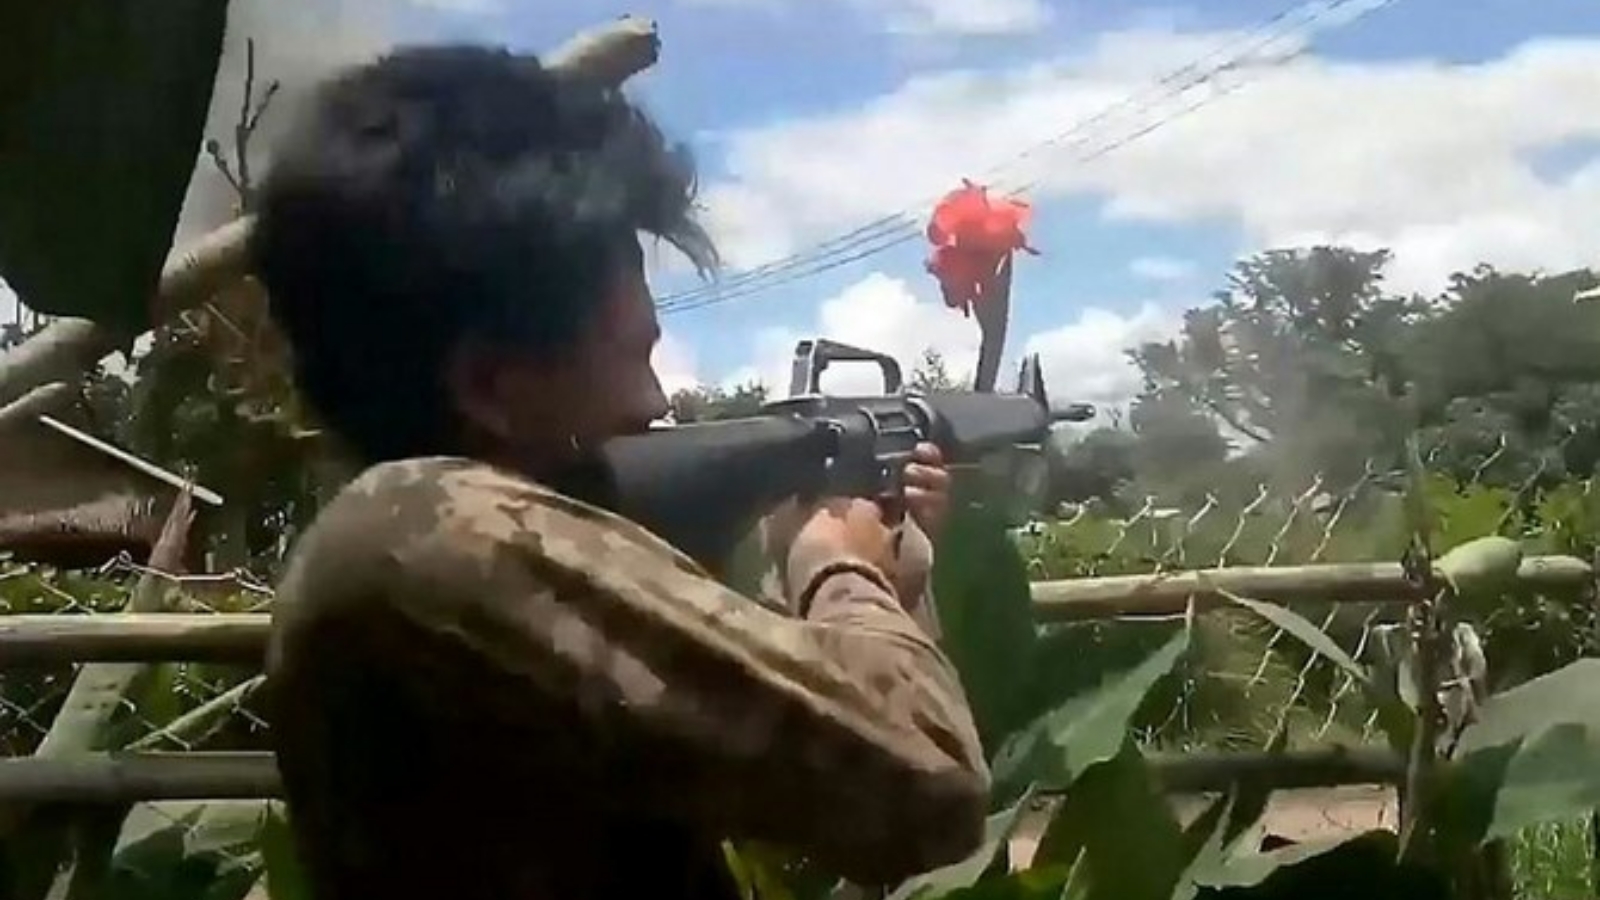 لقطة شاشة من مقطع فيديو بتاريخ 23 أيار/مايو 2021 تظهر مقاتلًا من قوات الدفاع الشعبية أثناء اشتباكات ضد قوات الأمن في ميانمار.